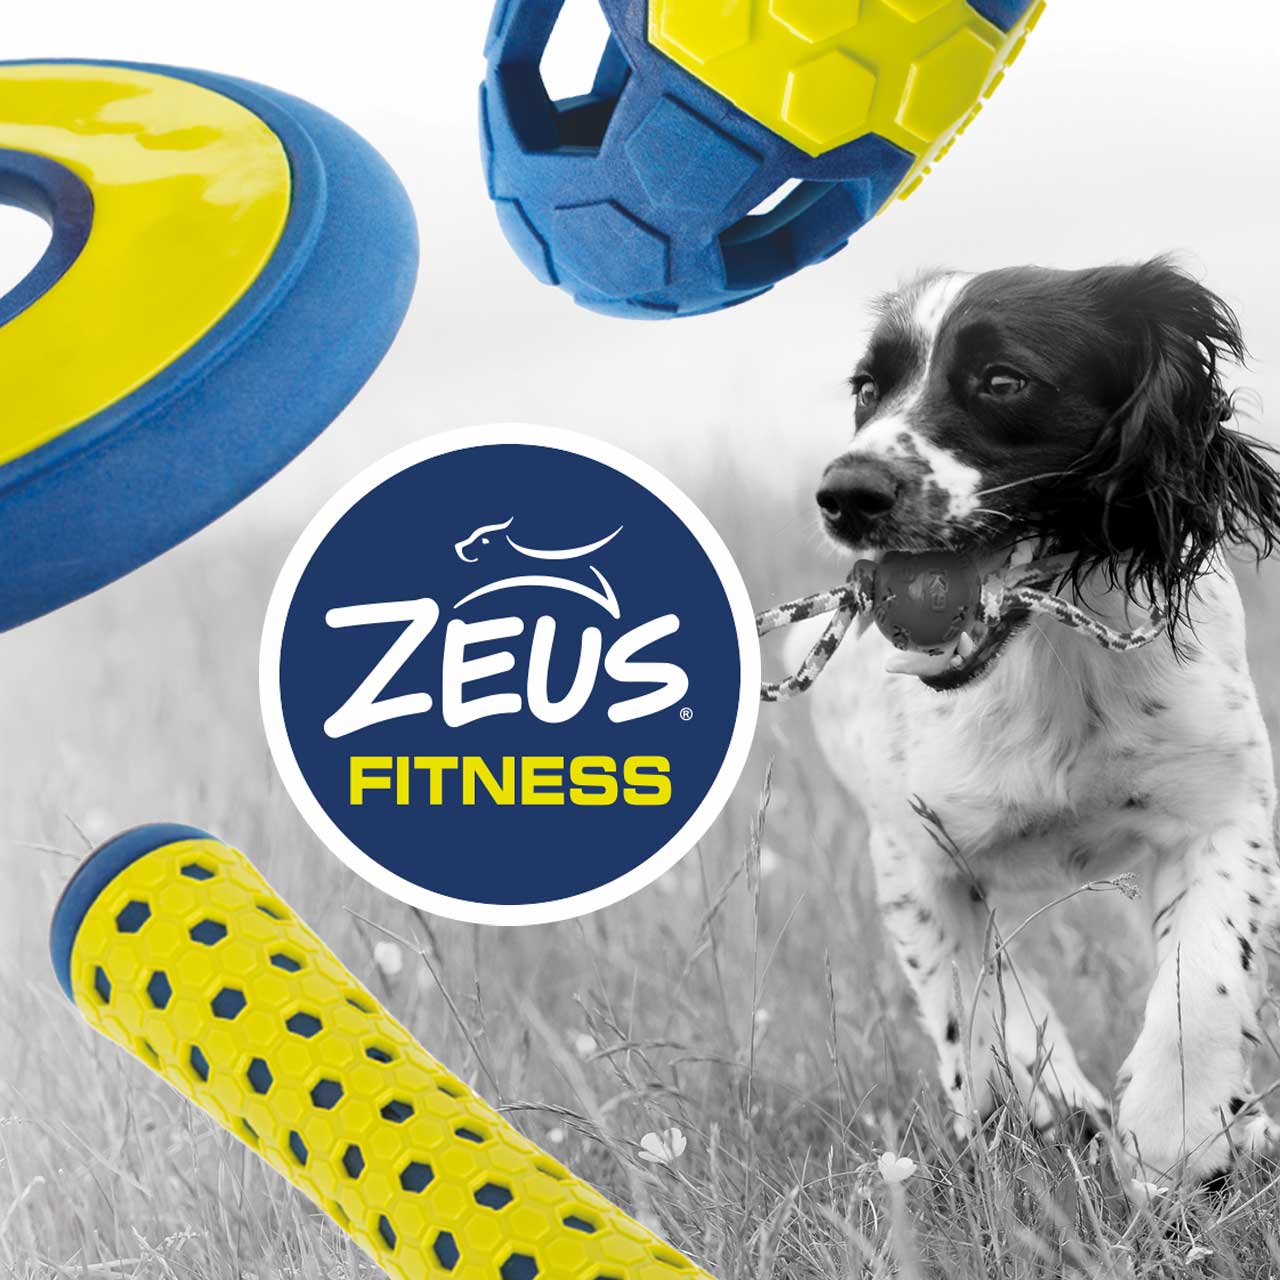 Zeus Fitness